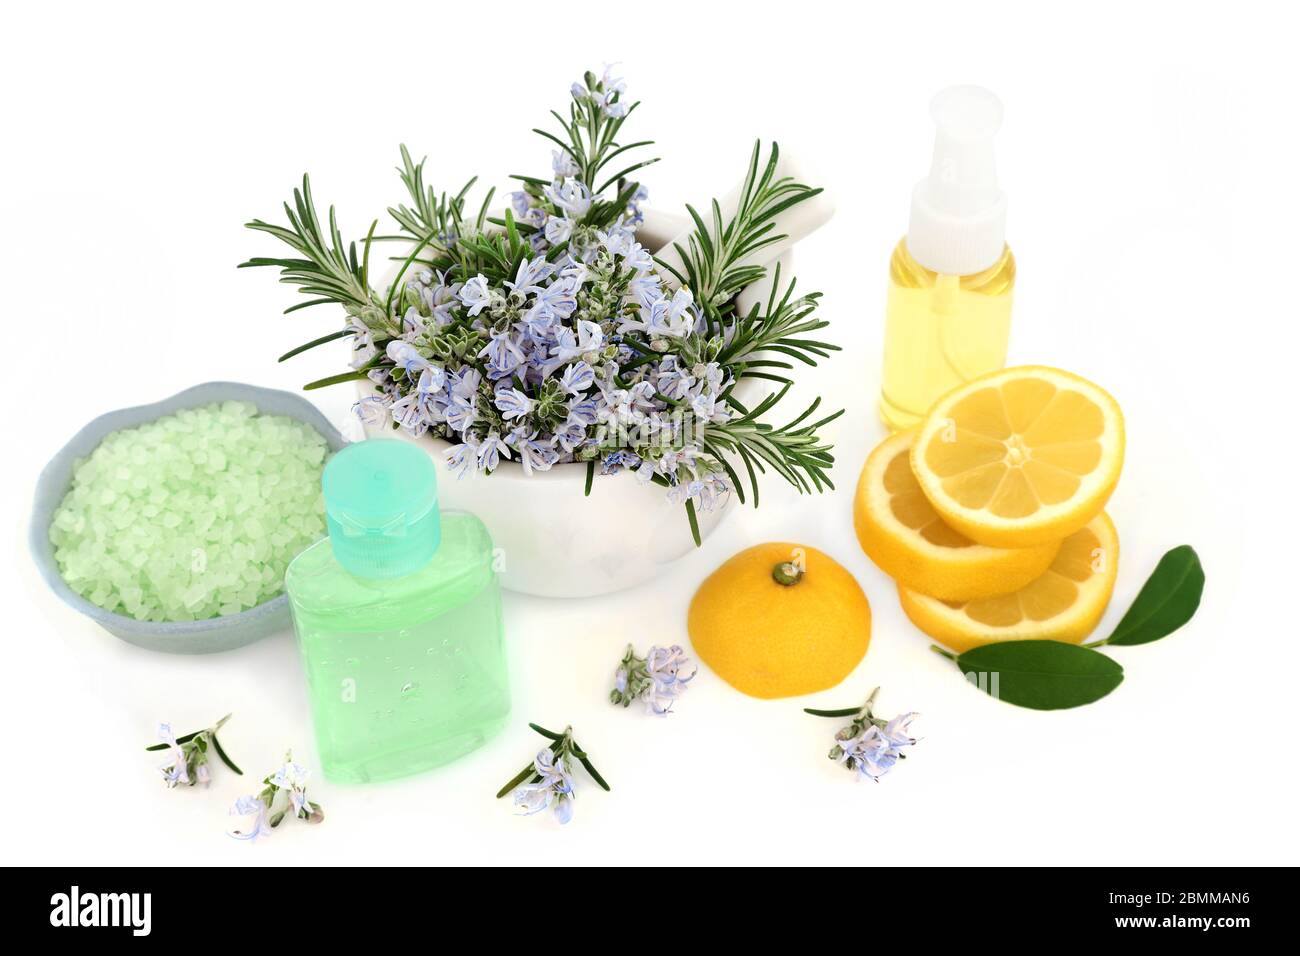 Rosmarin Kraut & Zitrone Hautpflege vegane Beauty-Behandlung mit Aromatherapie feuchtigkeitsspendende Öl, Gel & ex-Foliationssalze auf weiß. Vorteile bei der Anti-Aging-Wirkung Stockfoto